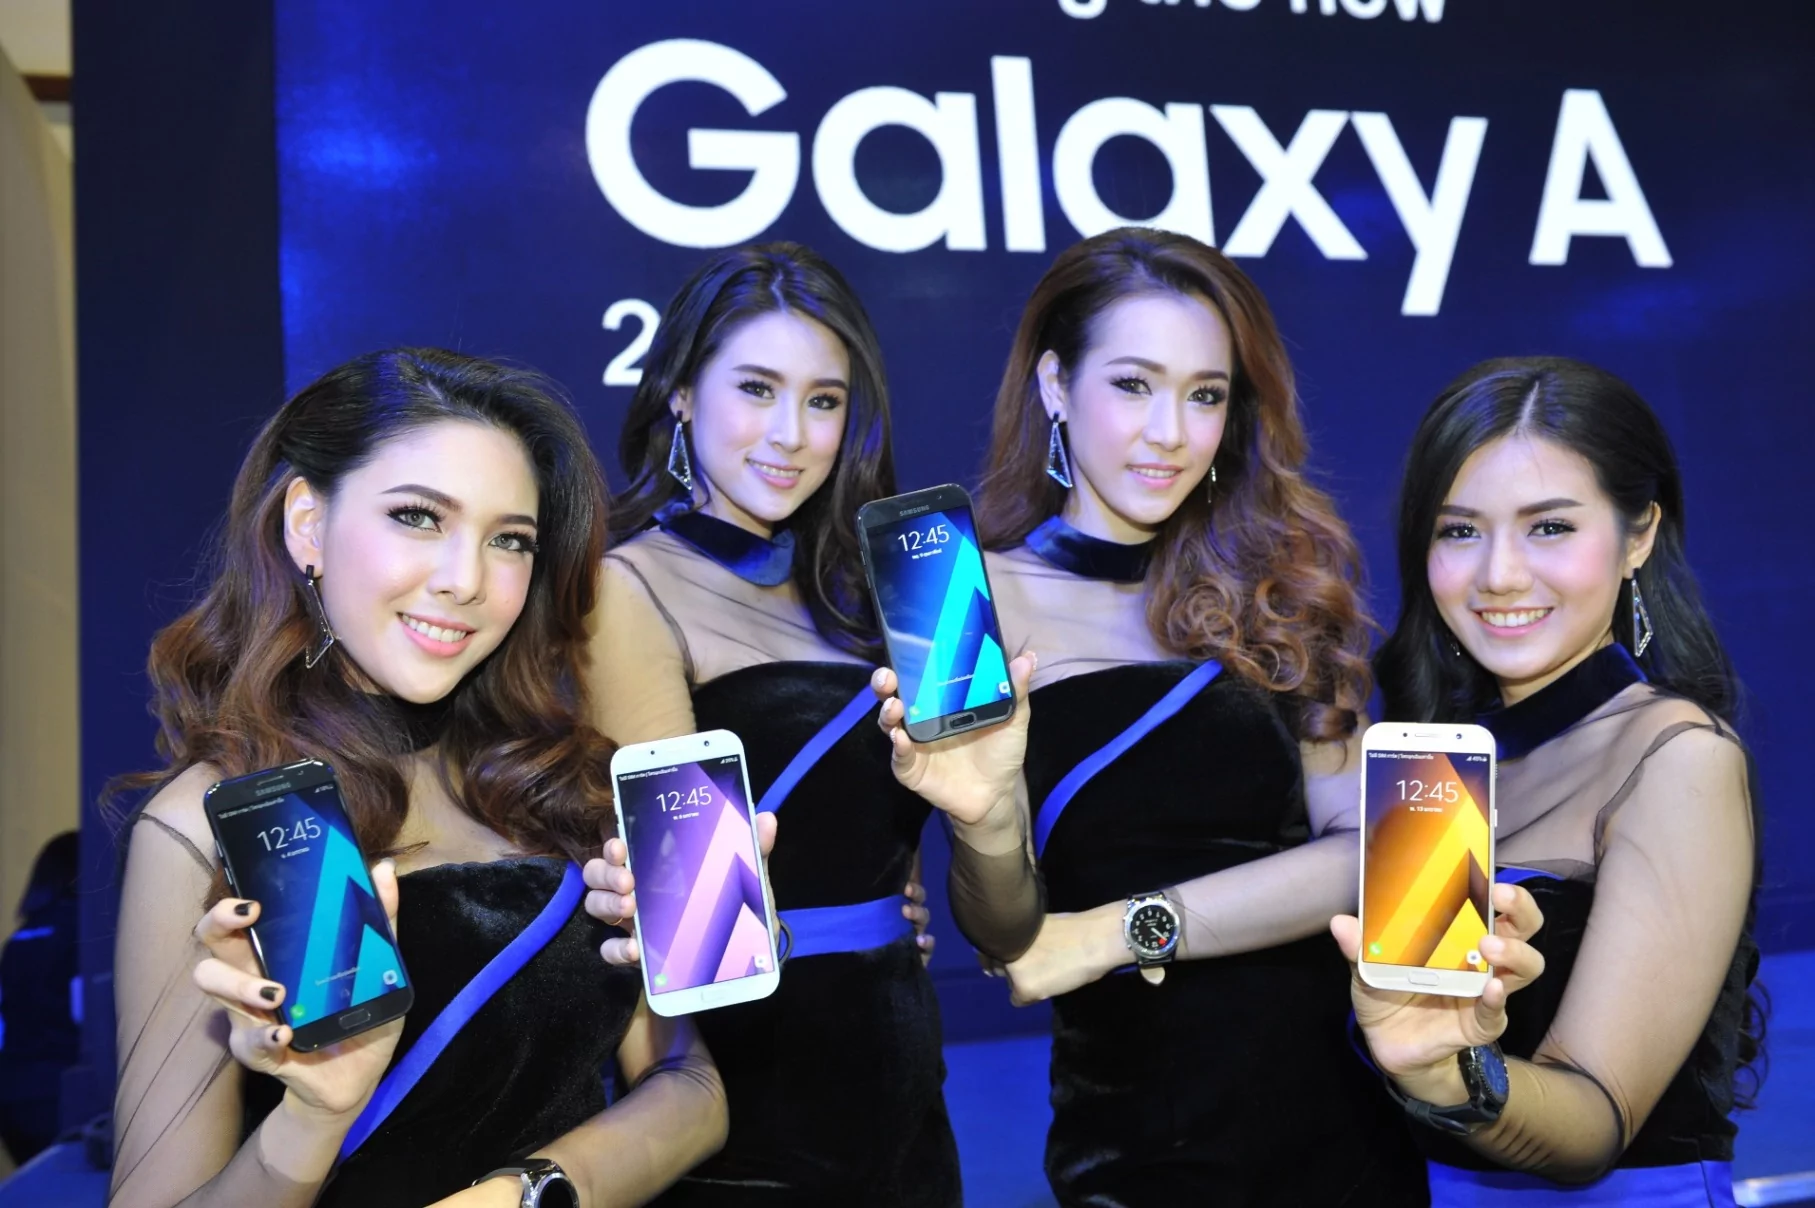 กาแลคซี่ เอ 2017 1 | galaxy a 2017 | [TME 2017] โปรโมชั่น Samsung ภายในงาน Mobile Expo และการเปิดตัว Galaxy A 2017 อย่างเป็นทางการ